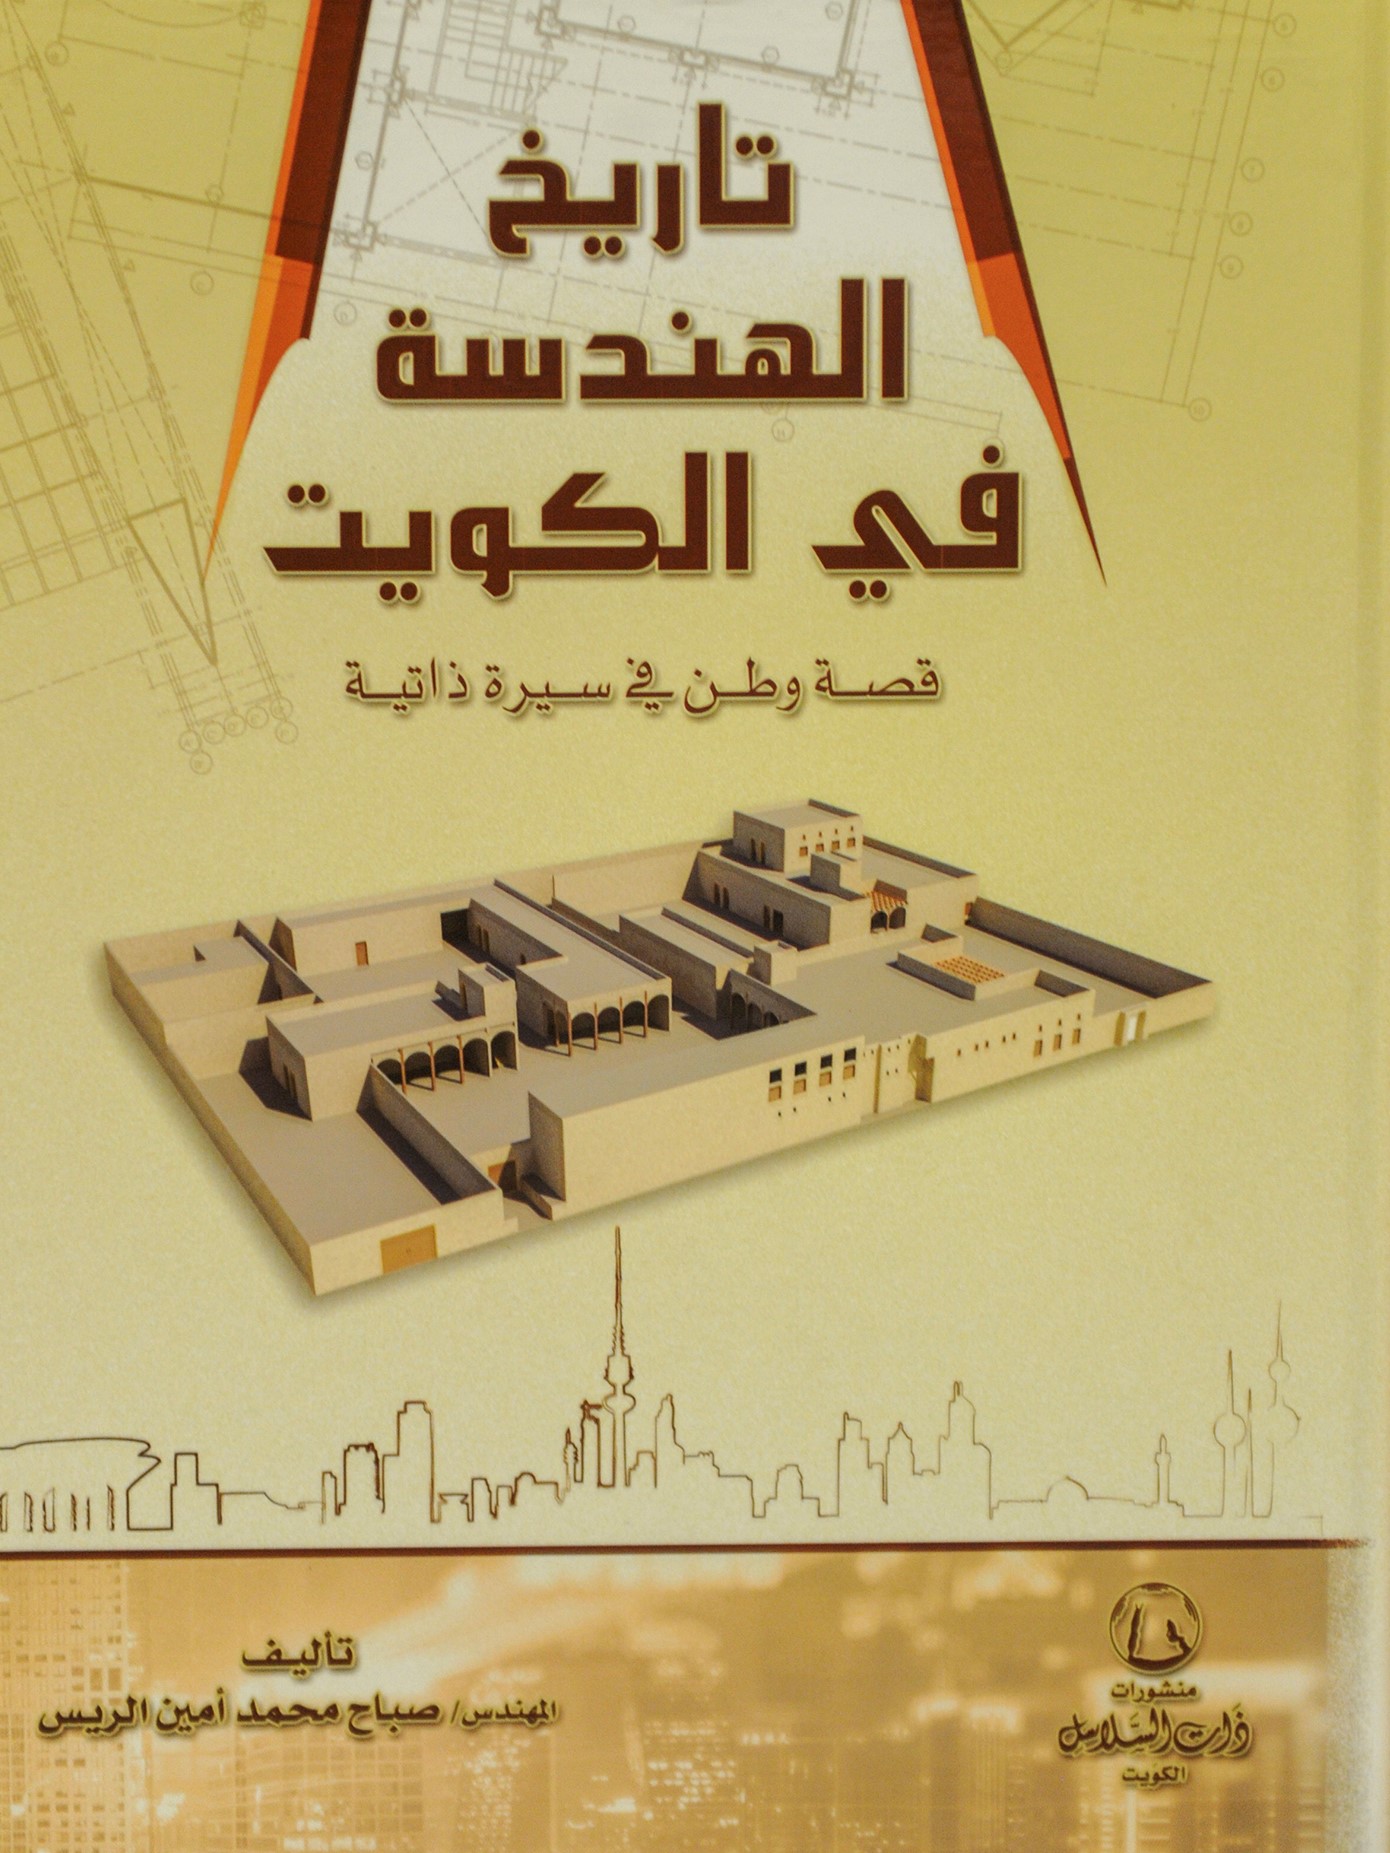 تاريخ الهندسة في الكويت: قصة وطن في سيرة ذاتية